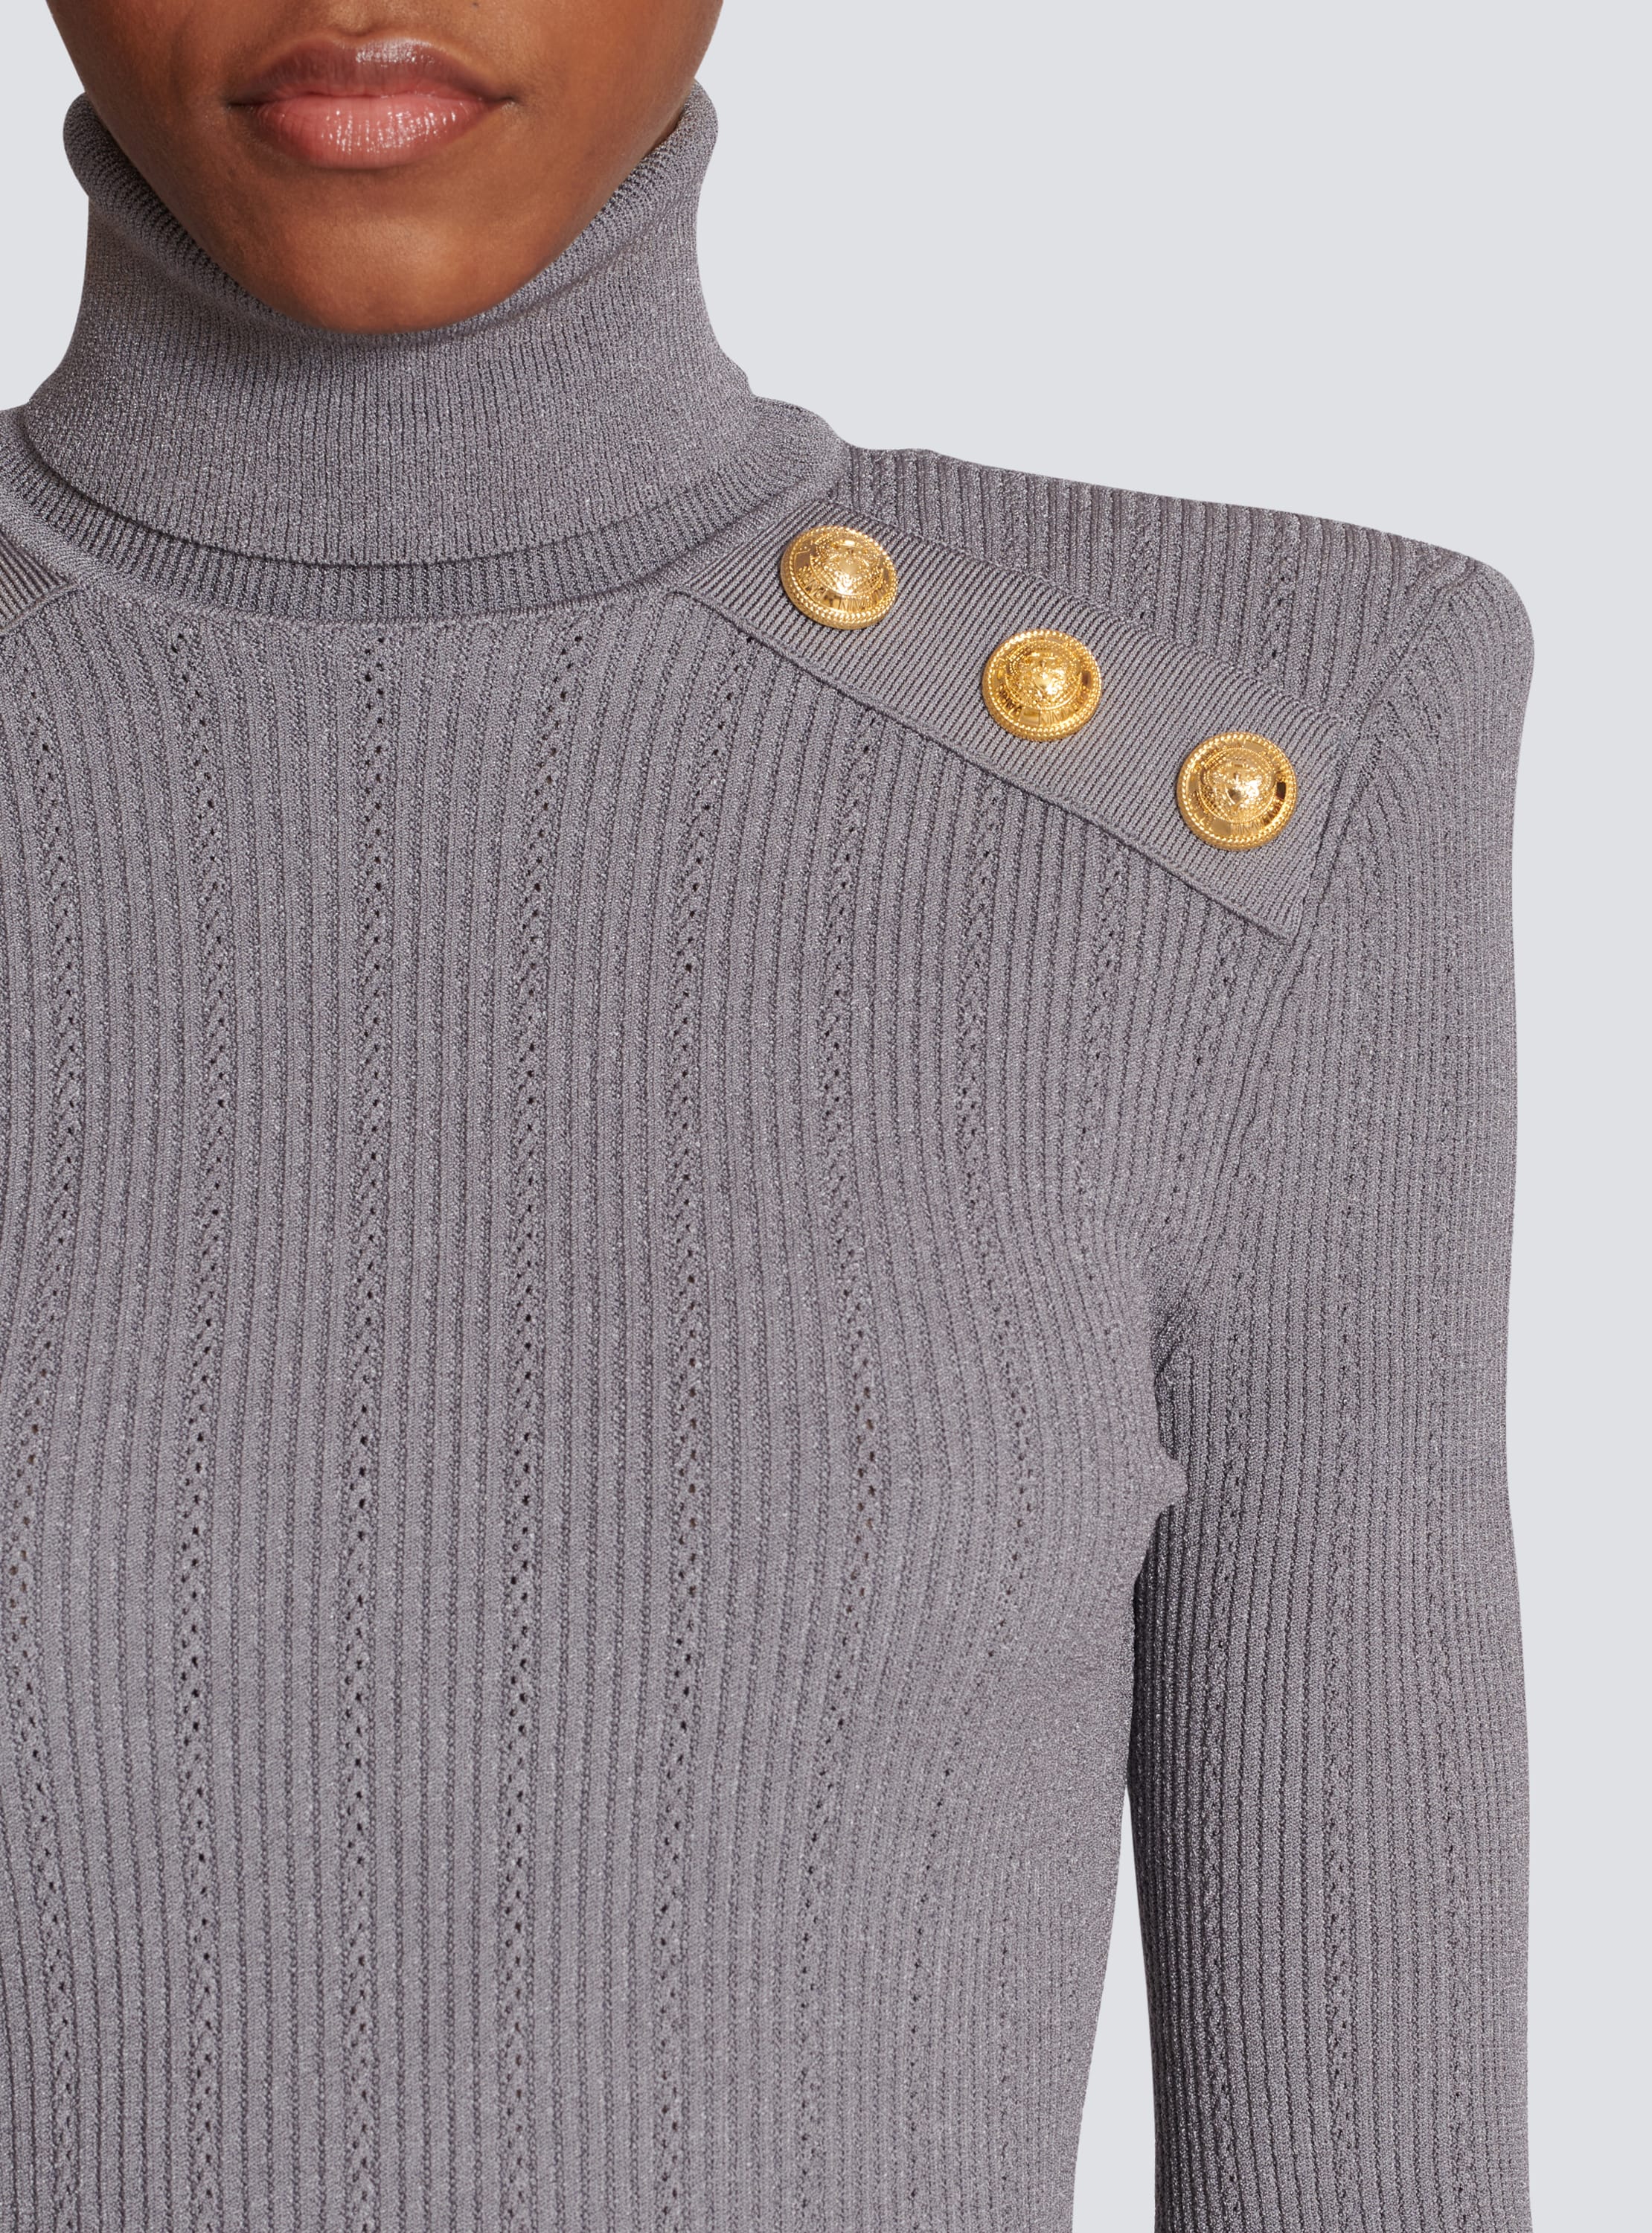 Knit jumper with gold buttons - Women | BALMAIN